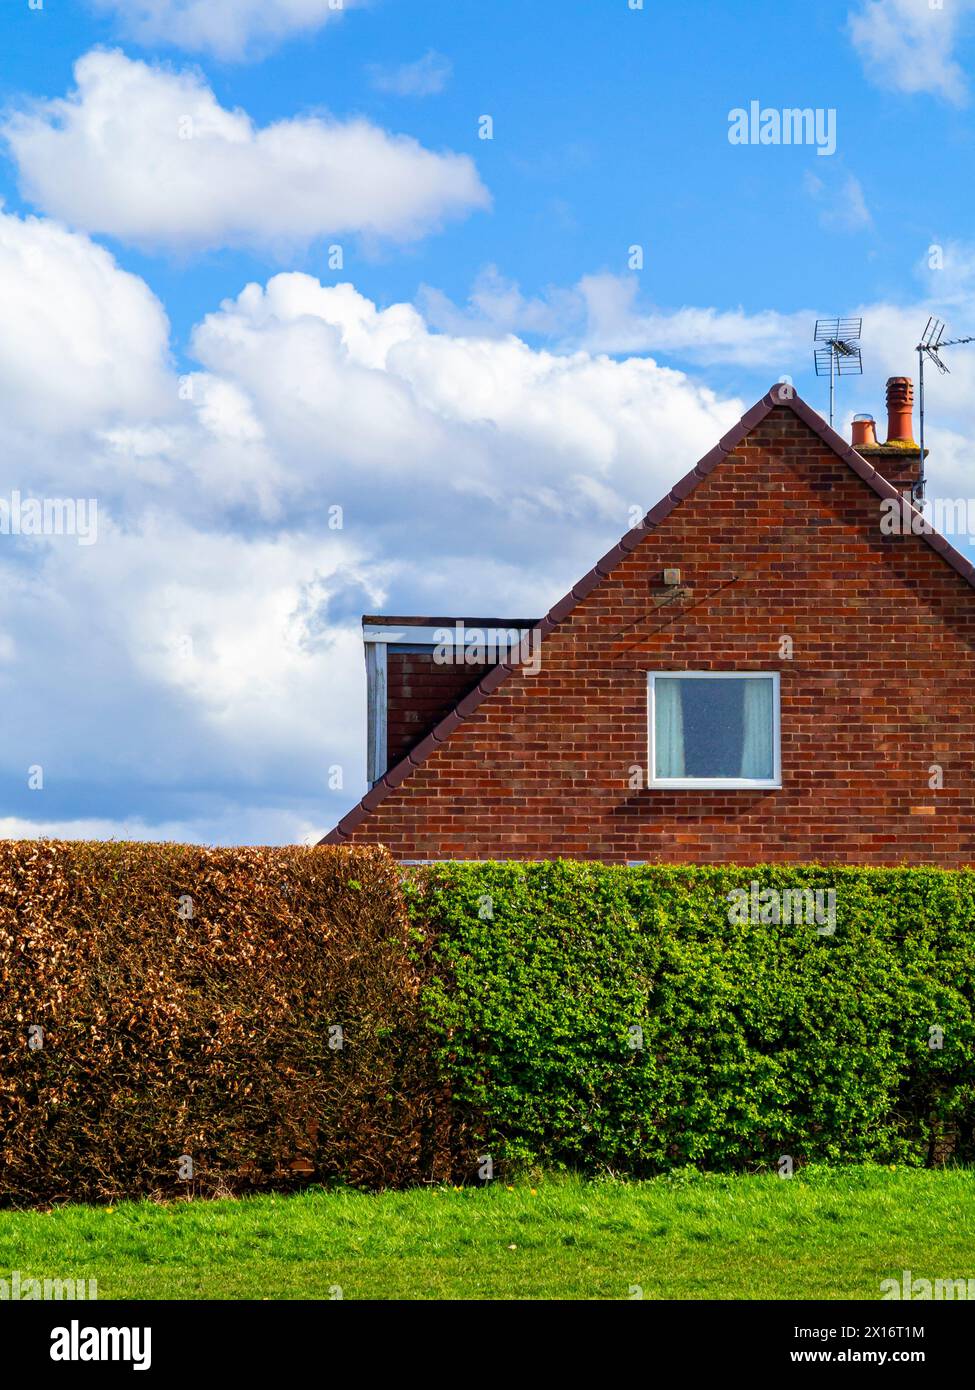 Casa suburbana in mattoni con finestra quadrata e siepe marrone e bianca in primo piano, cielo blu con nuvole bianche e soffici sullo sfondo. Foto Stock